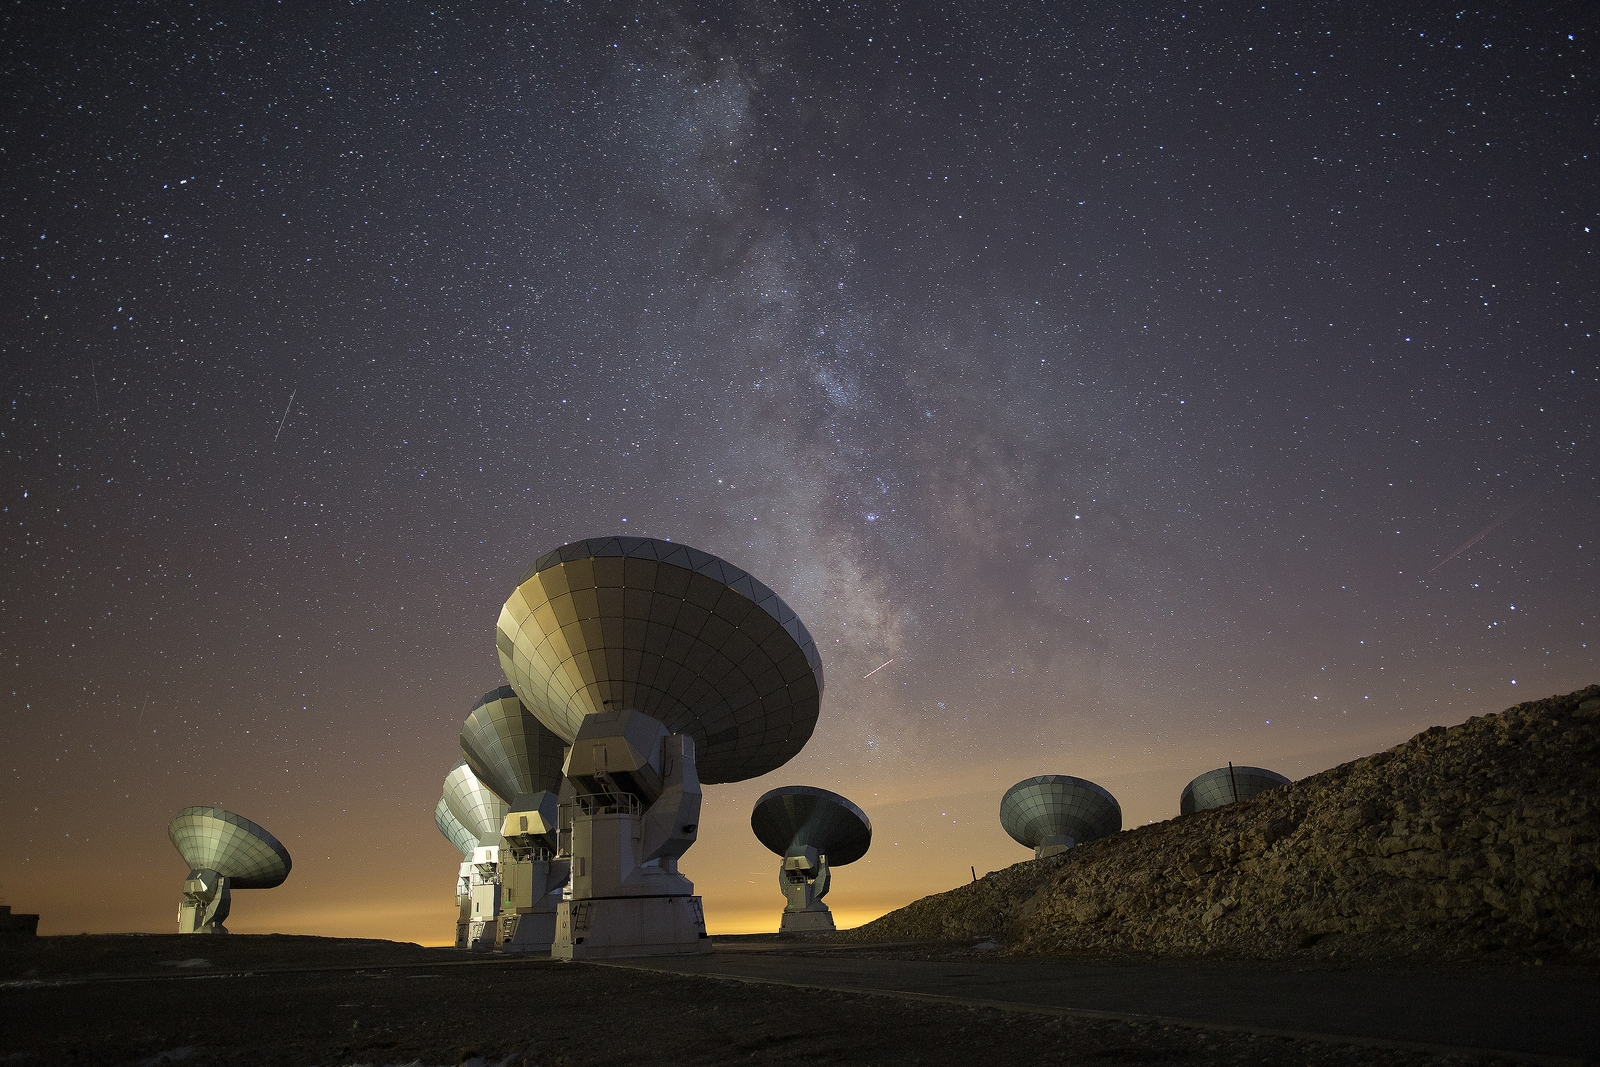 Antennes de l'observatoire NOEMA (MPG/Allemagne, CNRS/France, IGN/Espagne) le radiotélescope le plus puissant de l'hémisphère nord. L'observatoire opère à plus de 2.500 mètres d'altitude sur l'un des sites européens de haute altitude les plus étendus, le plateau de Bure dans les Alpes françaises. Le télescope est exploité par l'Institut de Radioastronomie Millimétrique (Iram) et est financé par la Société Max-Planck (Allemagne), le Centre National de Recherche Scientifique (France) et l'Instituto Geografico Nacional (Espagne). © IRAM-gre , CC by-sa 4.0